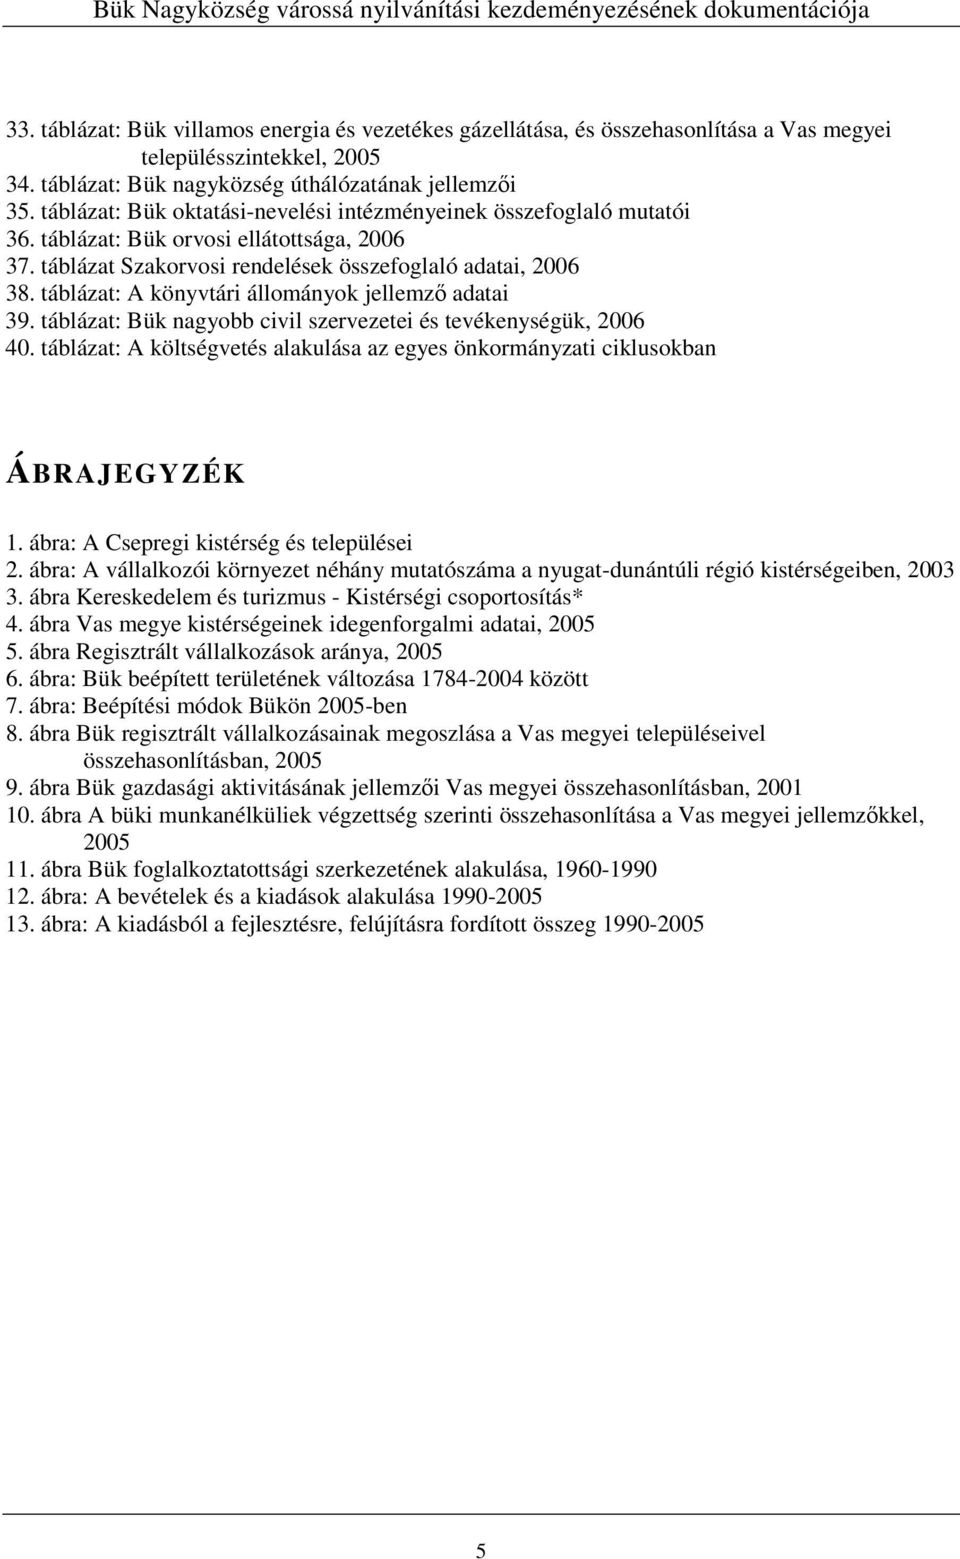 táblázat: A könyvtári állományok jellemzı adatai 39. táblázat: Bük nagyobb civil szervezetei és tevékenységük, 2006 40.